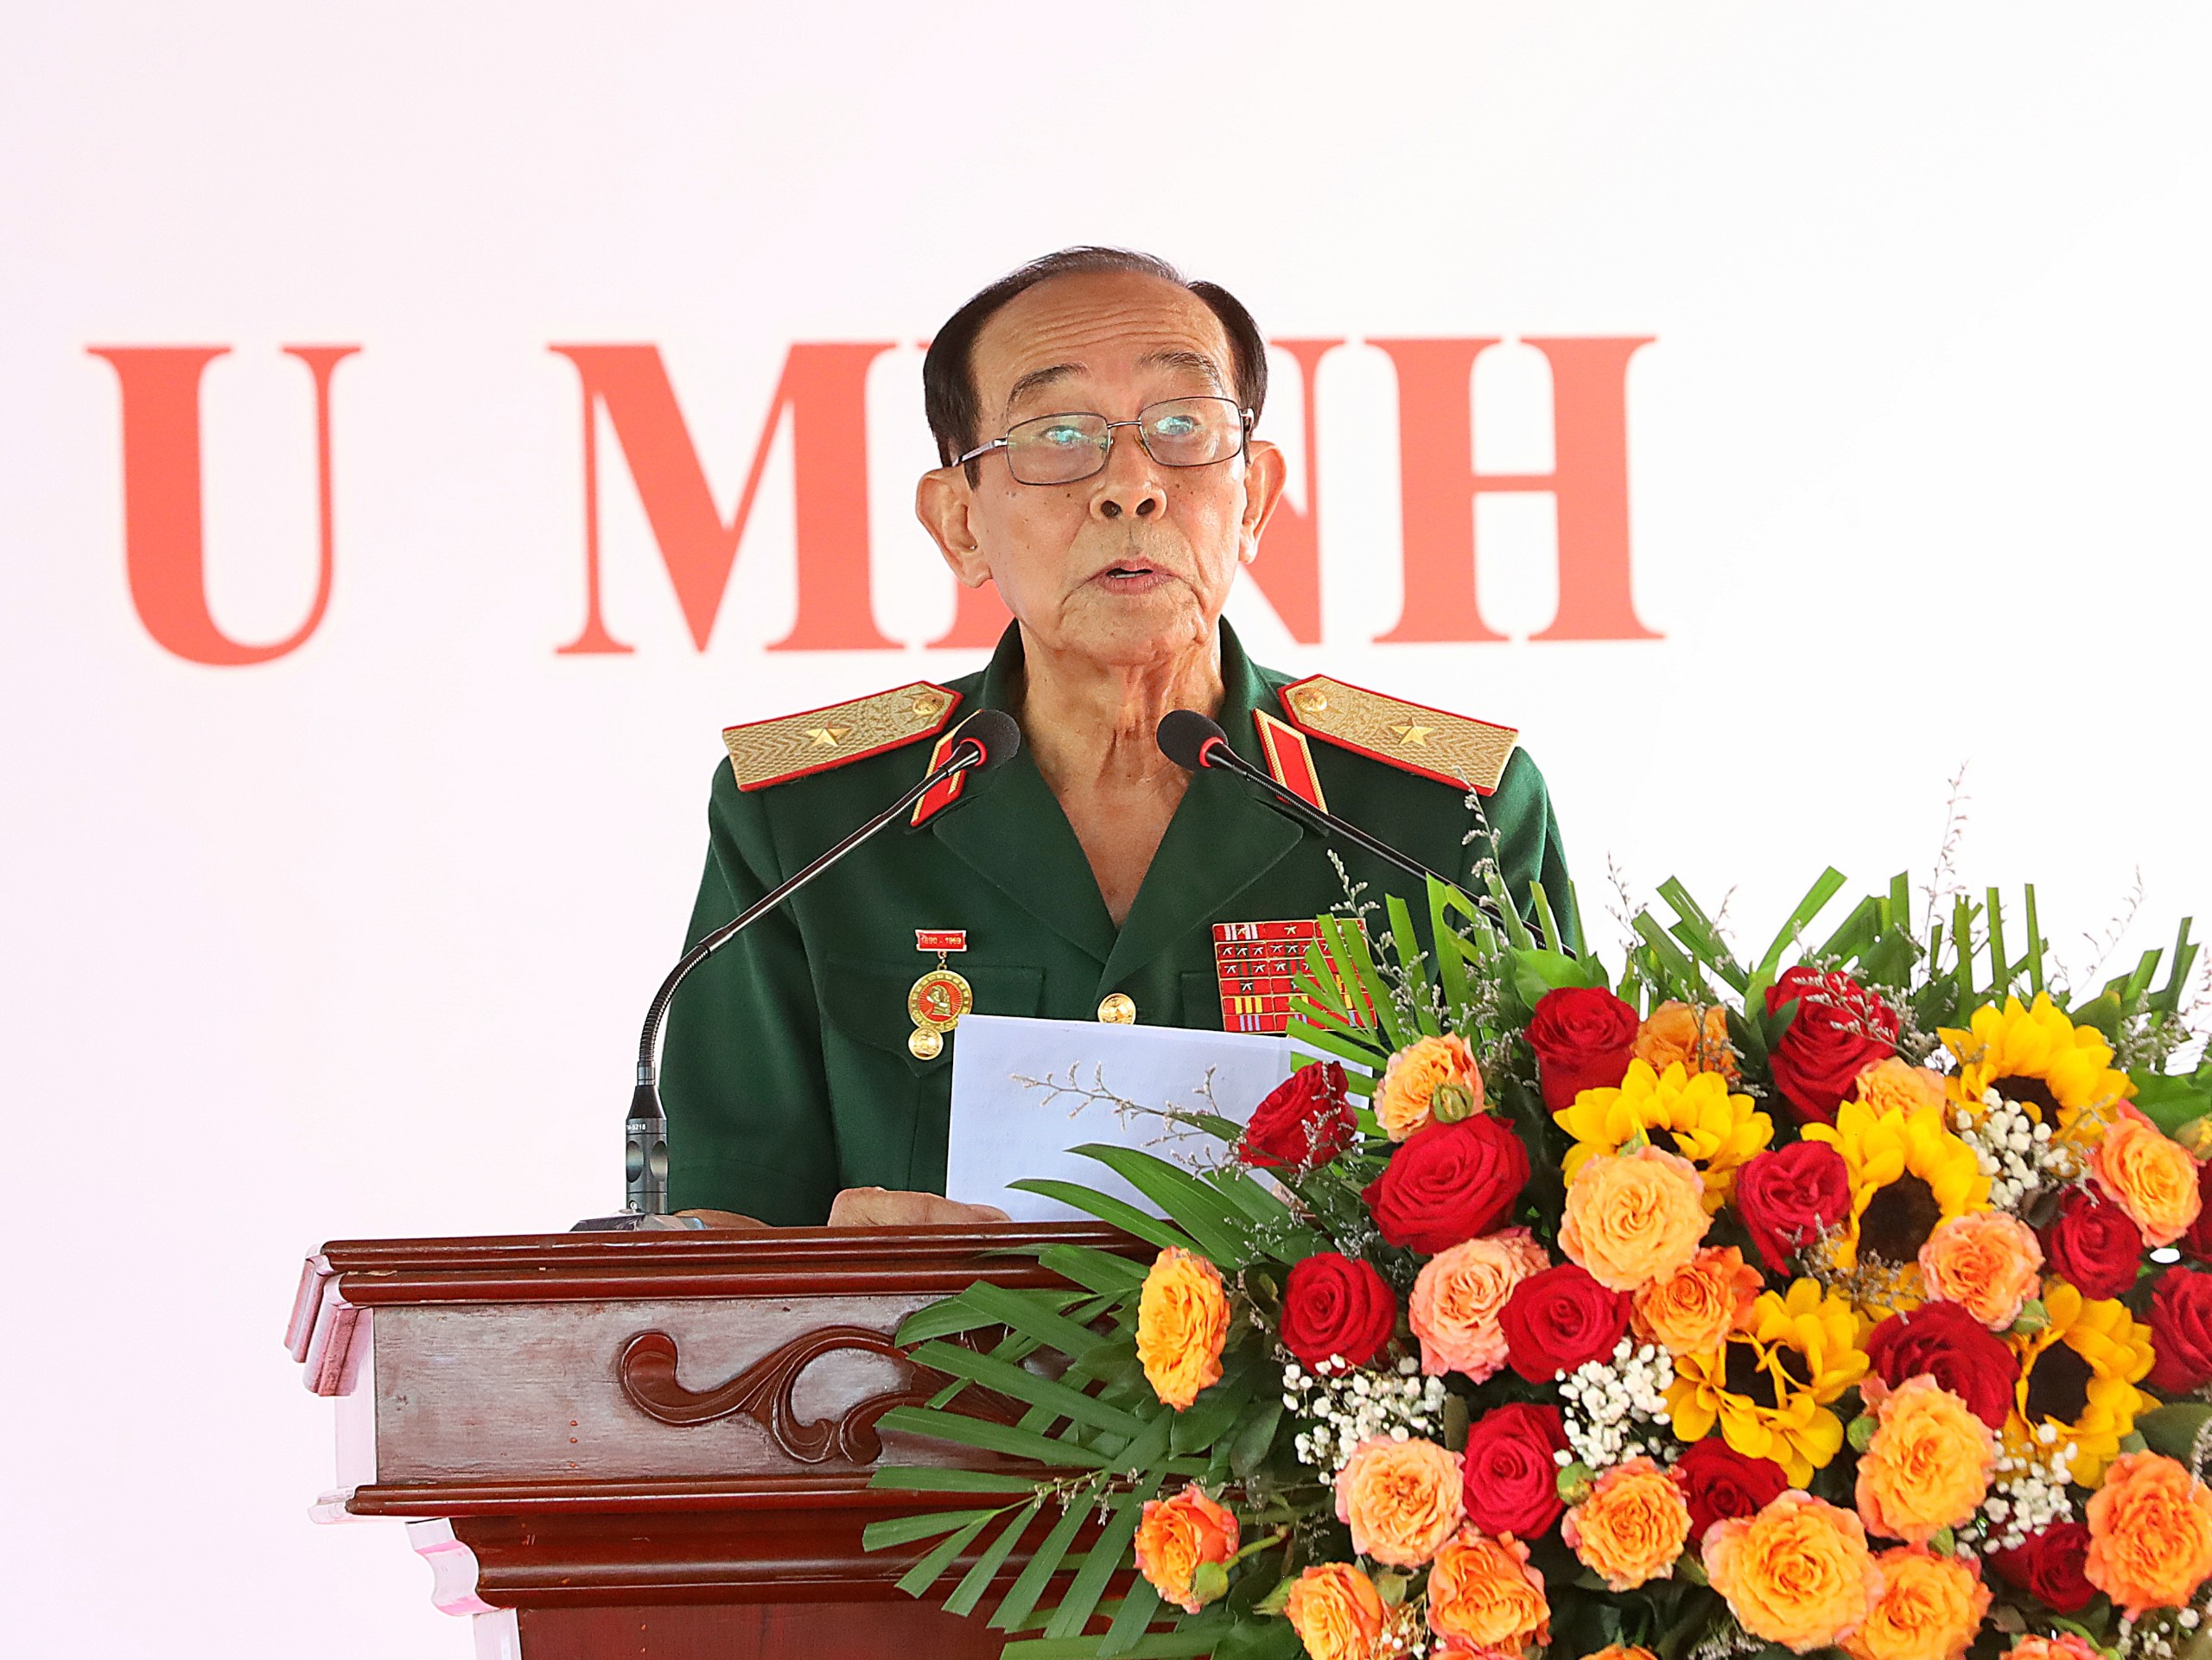 Thiếu tướng Trần Vinh Quang - Nguyên Thứ trưởng Bộ Lao động - Thương binh và Xã hội, Trưởng Ban Liên lạc CCB Trung đoàn 1 - U Minh phát biểu tại buổi lễ.